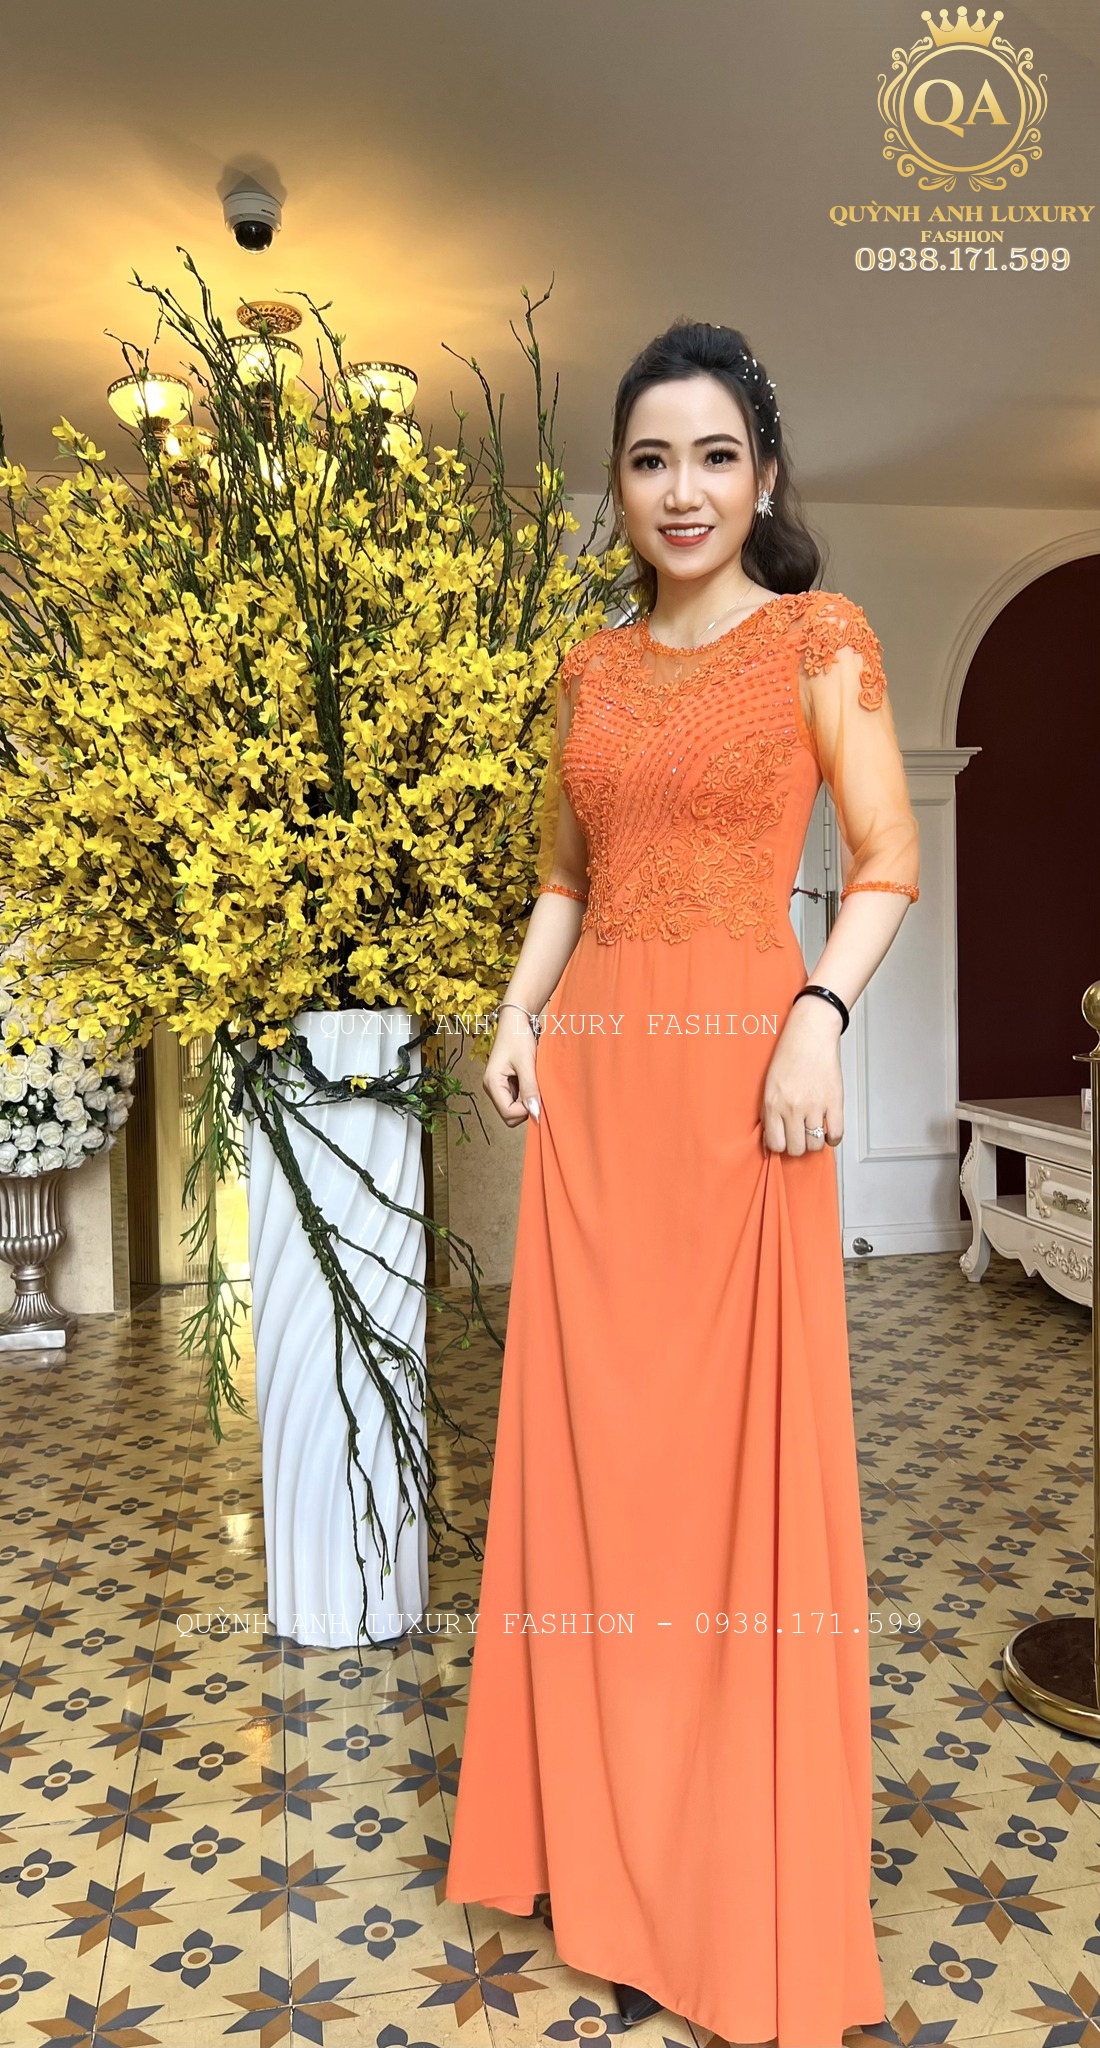 Đầm dạ hội Biên Hoà bán và cho thuê đầm dạ hội ở Đồng Nai  Đầm Dạ Hội  Vest Doanh Nhân  Luna Store